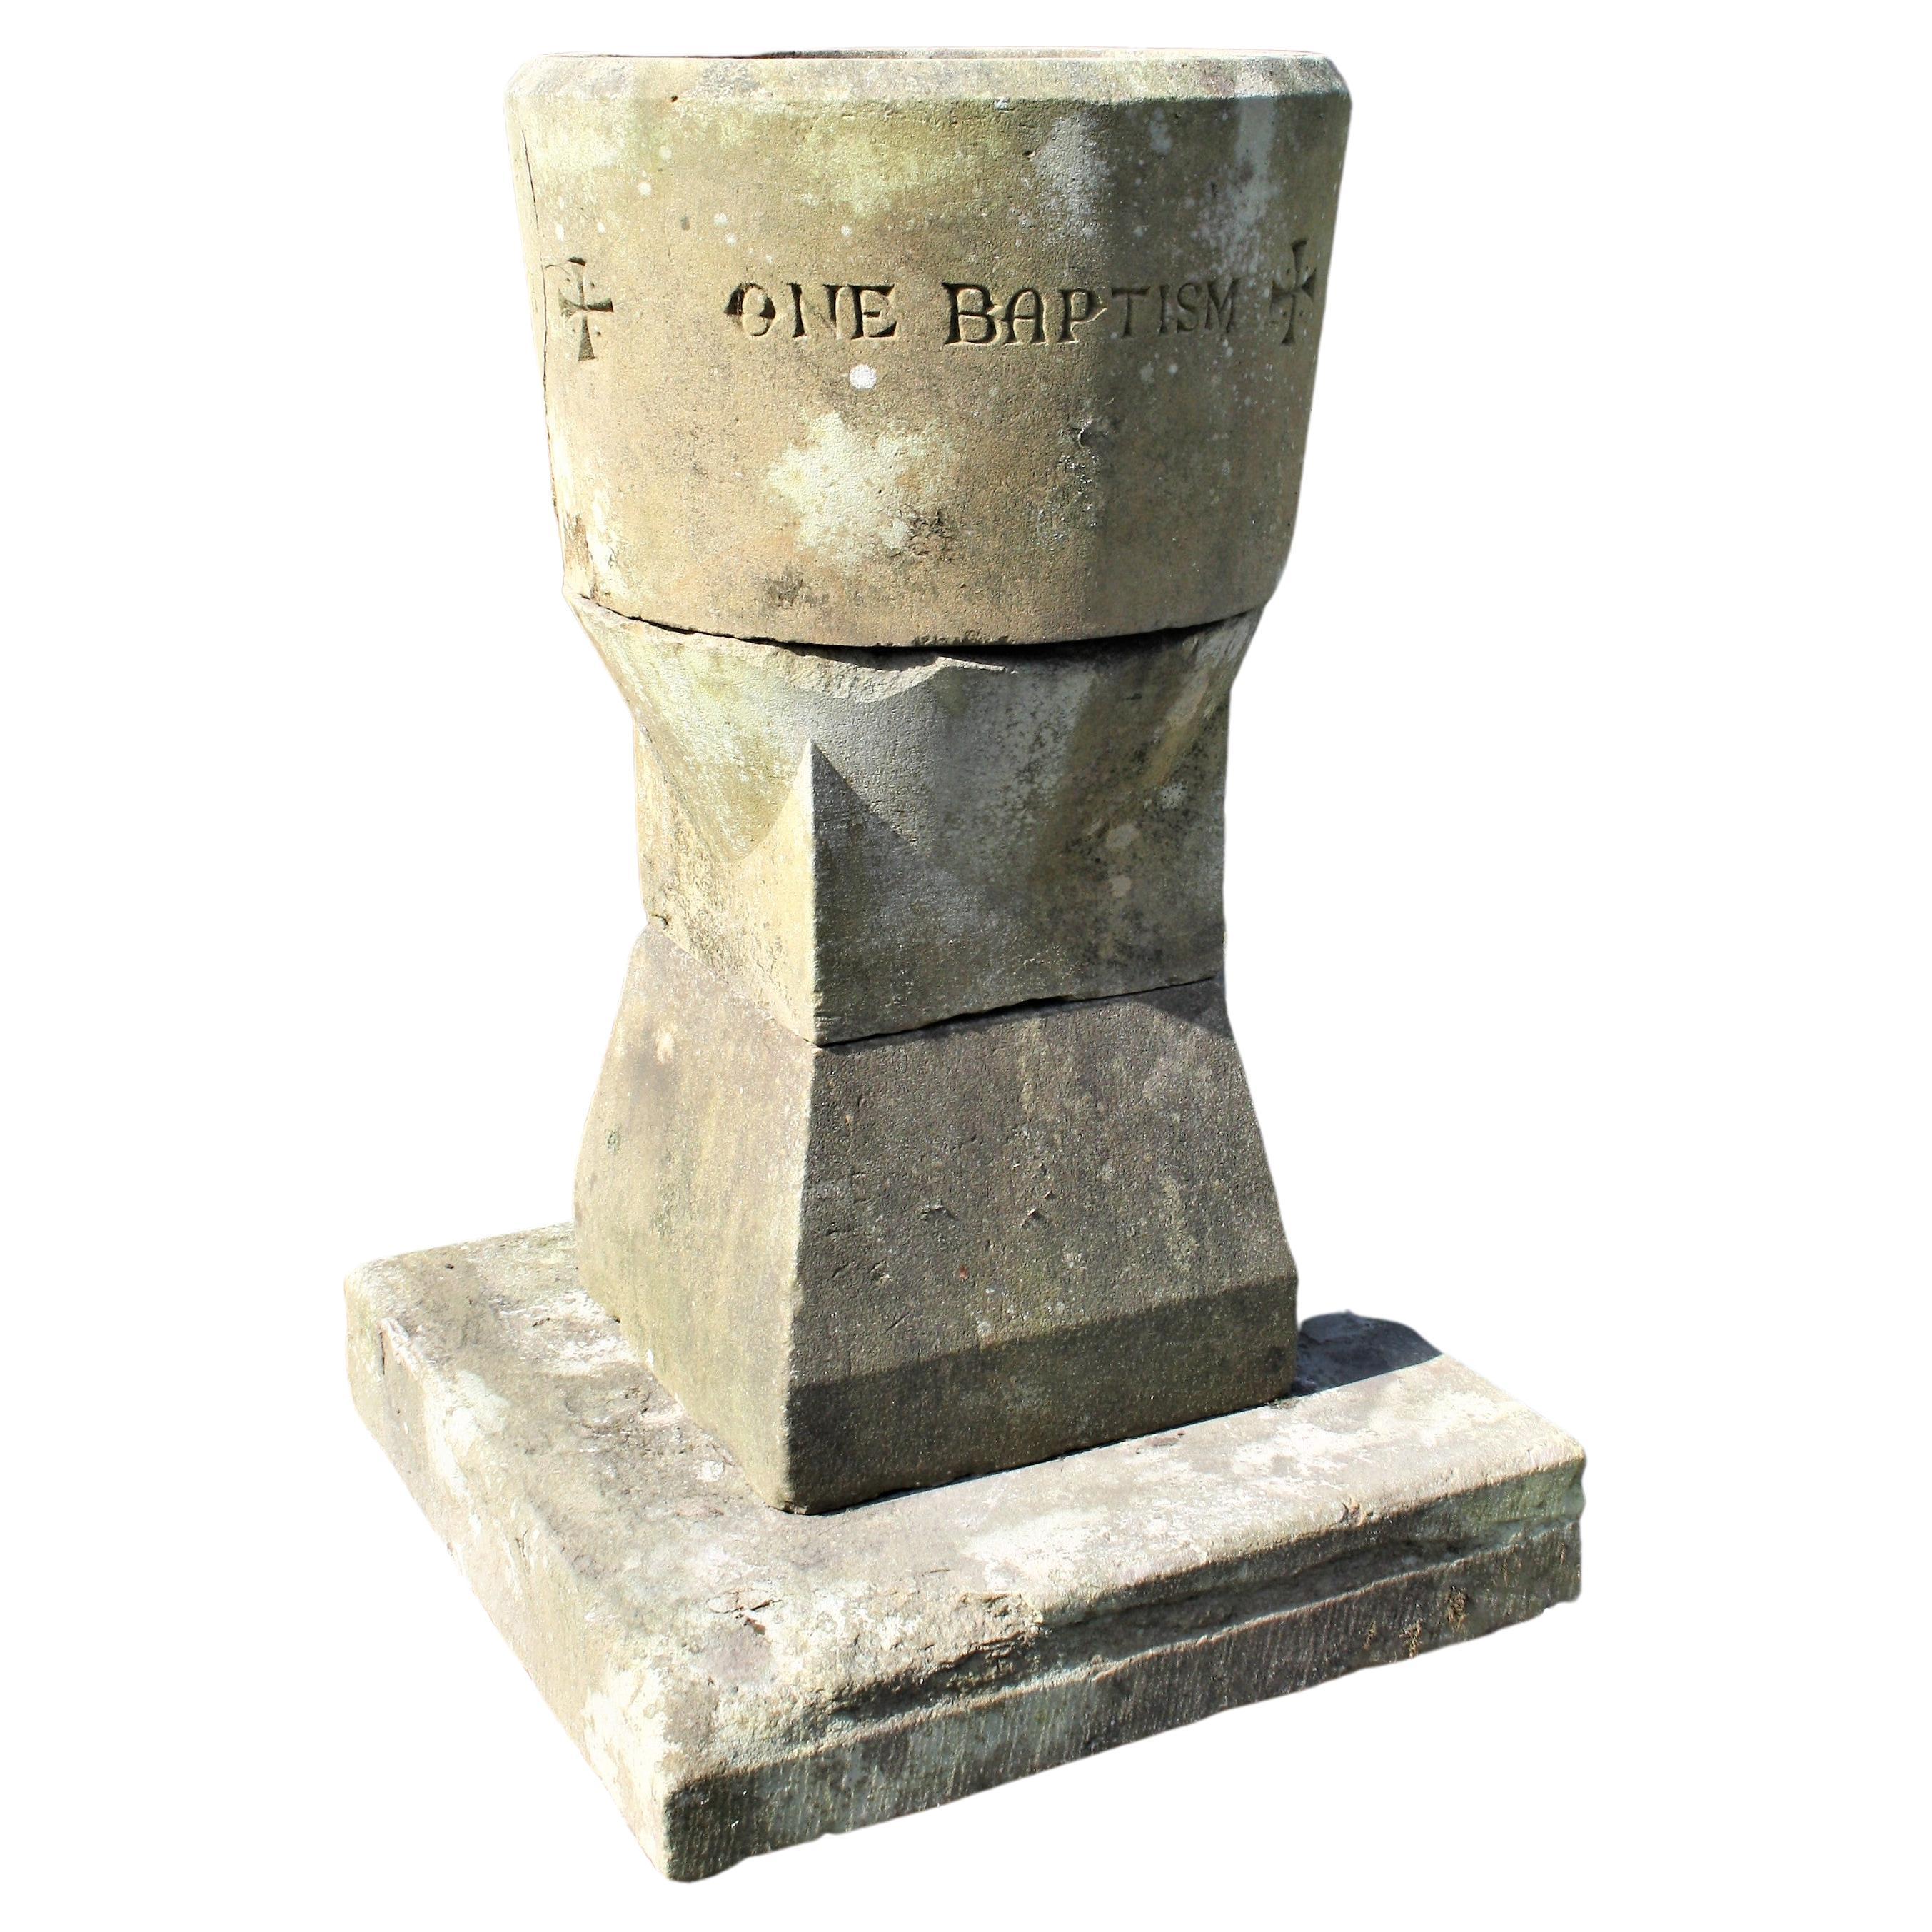 Großes Pflanzgefäß aus geschnitztem Stein und Sandstein für Kirchenbrunnen, Church Basin Font, Gartenbrunnen